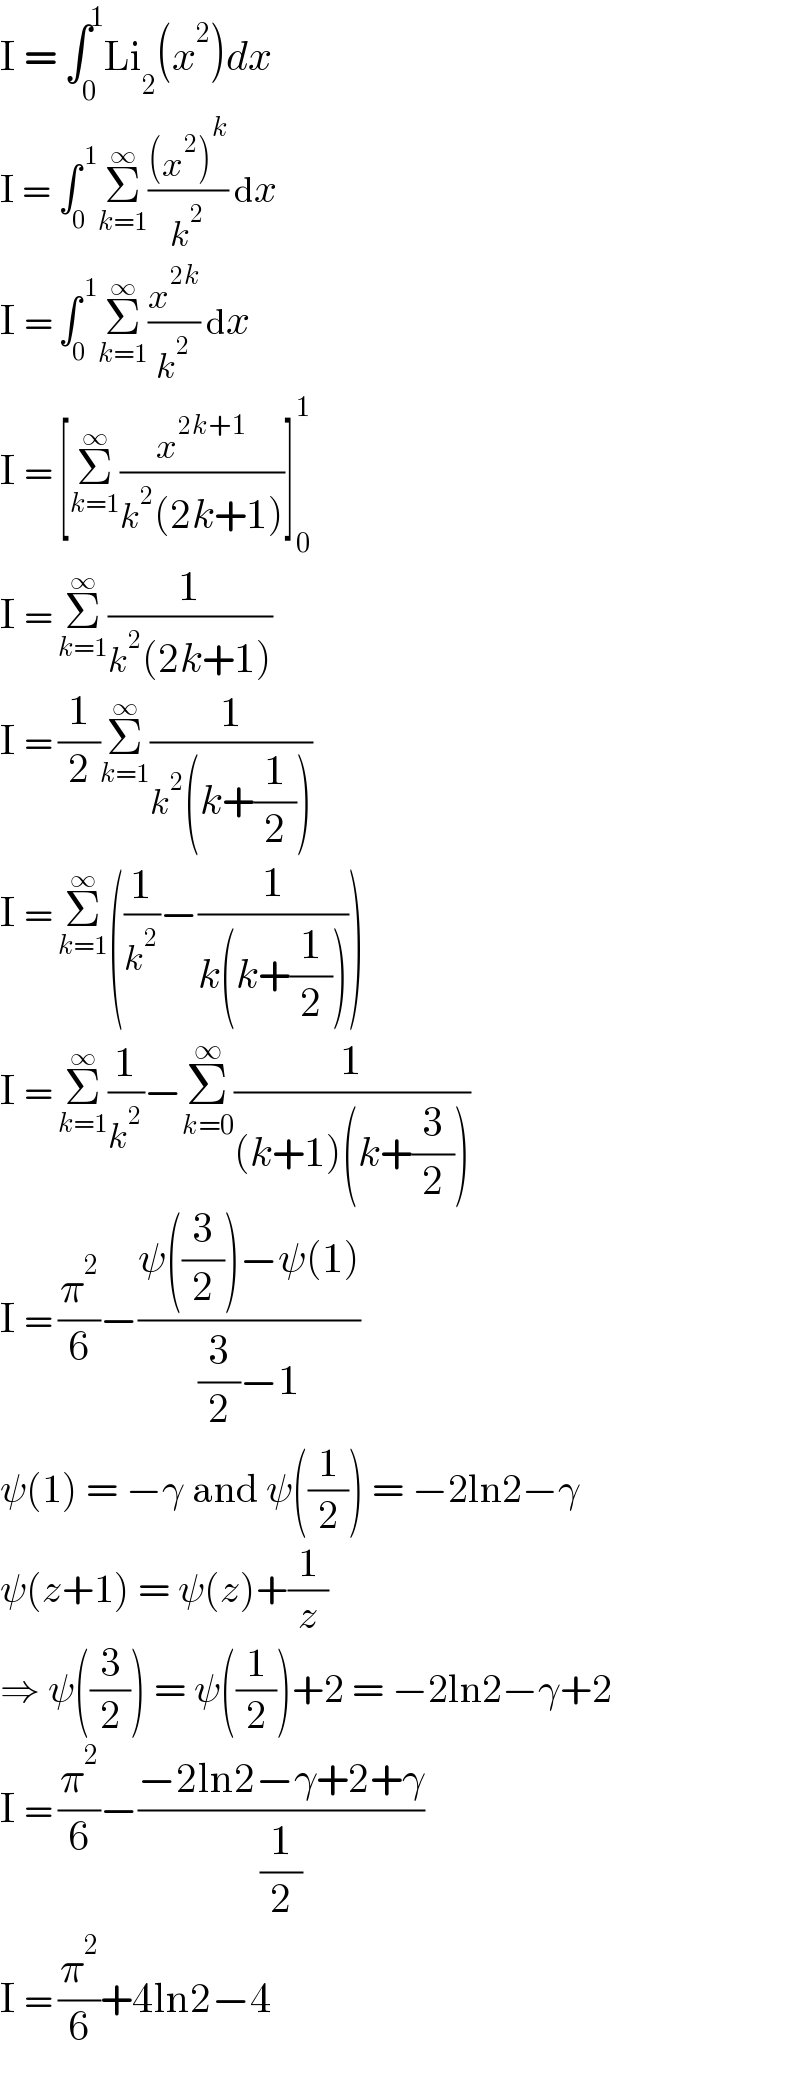 I = ∫_0 ^1 Li_2 (x^2 )dx  I = ∫_0 ^( 1) Σ_(k=1) ^∞ (((x^2 )^k )/k^2 ) dx  I = ∫_0 ^( 1) Σ_(k=1) ^∞ (x^(2k) /k^2 ) dx  I = [Σ_(k=1) ^∞ (x^(2k+1) /(k^2 (2k+1)))]_0 ^1   I = Σ_(k=1) ^∞ (1/(k^2 (2k+1)))  I = (1/2)Σ_(k=1) ^∞ (1/(k^2 (k+(1/2))))  I = Σ_(k=1) ^∞ ((1/k^2 )−(1/(k(k+(1/2)))))  I = Σ_(k=1) ^∞ (1/k^2 )−Σ_(k=0) ^∞ (1/((k+1)(k+(3/2))))  I = (π^2 /6)−((ψ((3/2))−ψ(1))/((3/2)−1))  ψ(1) = −γ and ψ((1/2)) = −2ln2−γ  ψ(z+1) = ψ(z)+(1/z)  ⇒ ψ((3/2)) = ψ((1/2))+2 = −2ln2−γ+2  I = (π^2 /6)−((−2ln2−γ+2+γ)/(1/2))  I = (π^2 /6)+4ln2−4  